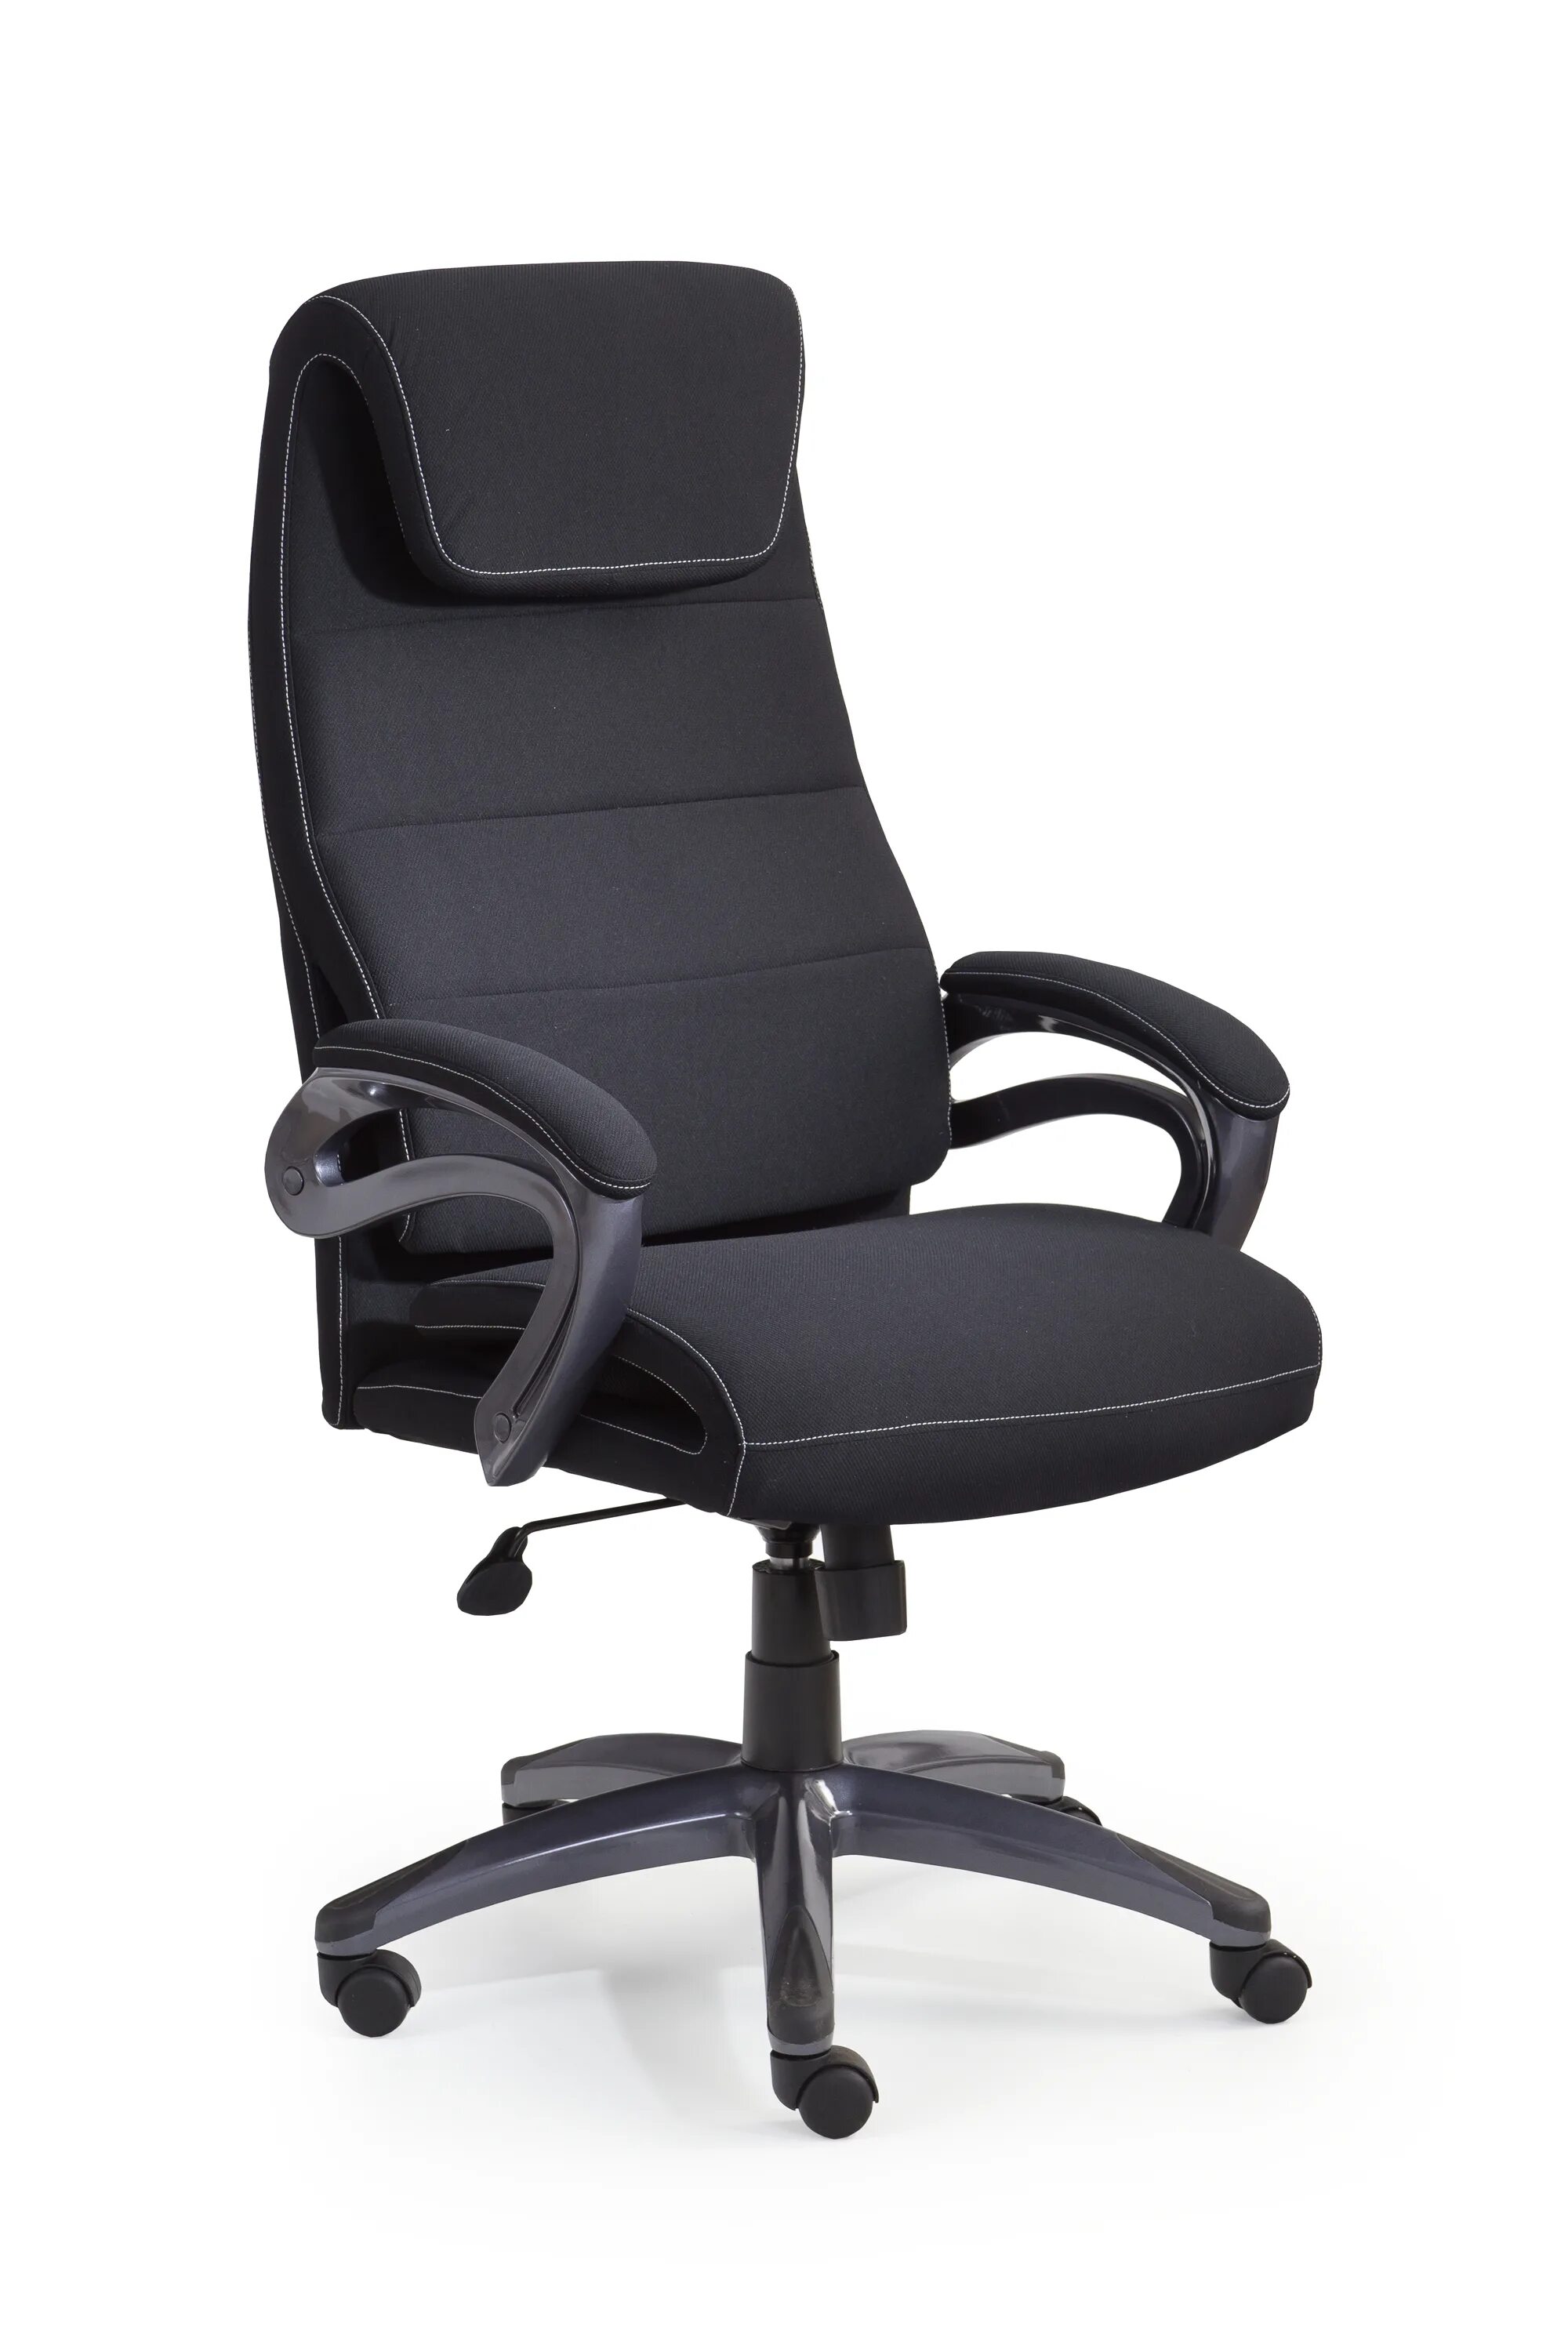 Кресло офисное kobor. Кресло руководительское Wally (cm-b137aw-4) серый. Стул компьютерный. Стул офисный. Кресло для компьютера.